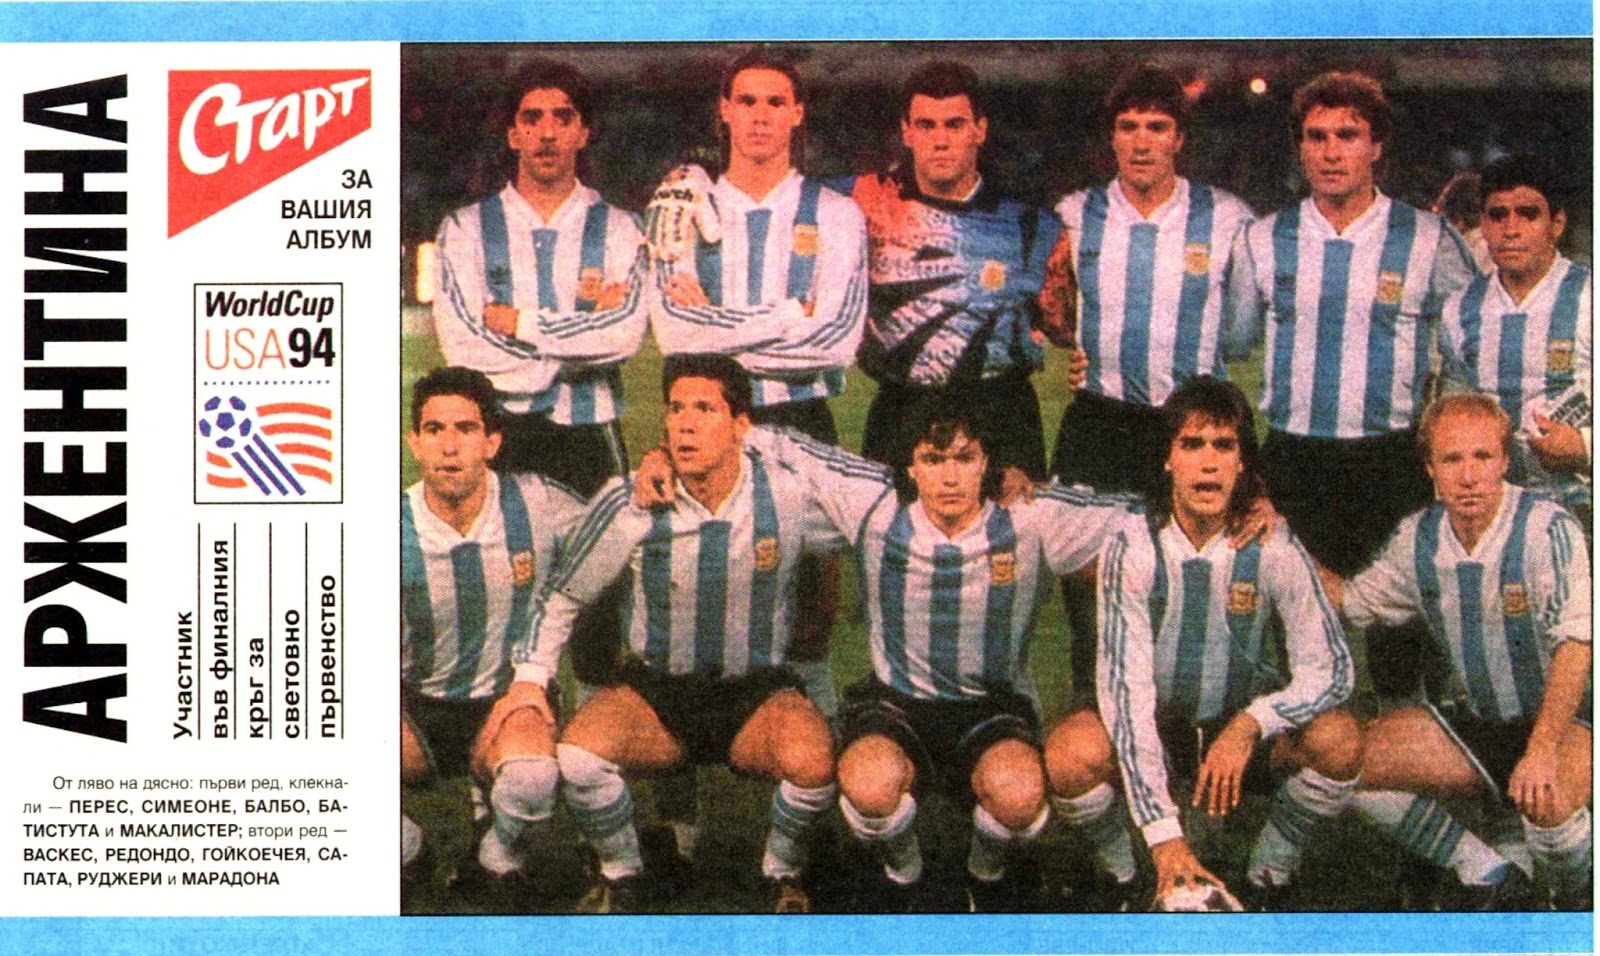 Argentina Vs Australia 1993 - Diego Argentina Vs Australia Repechaje